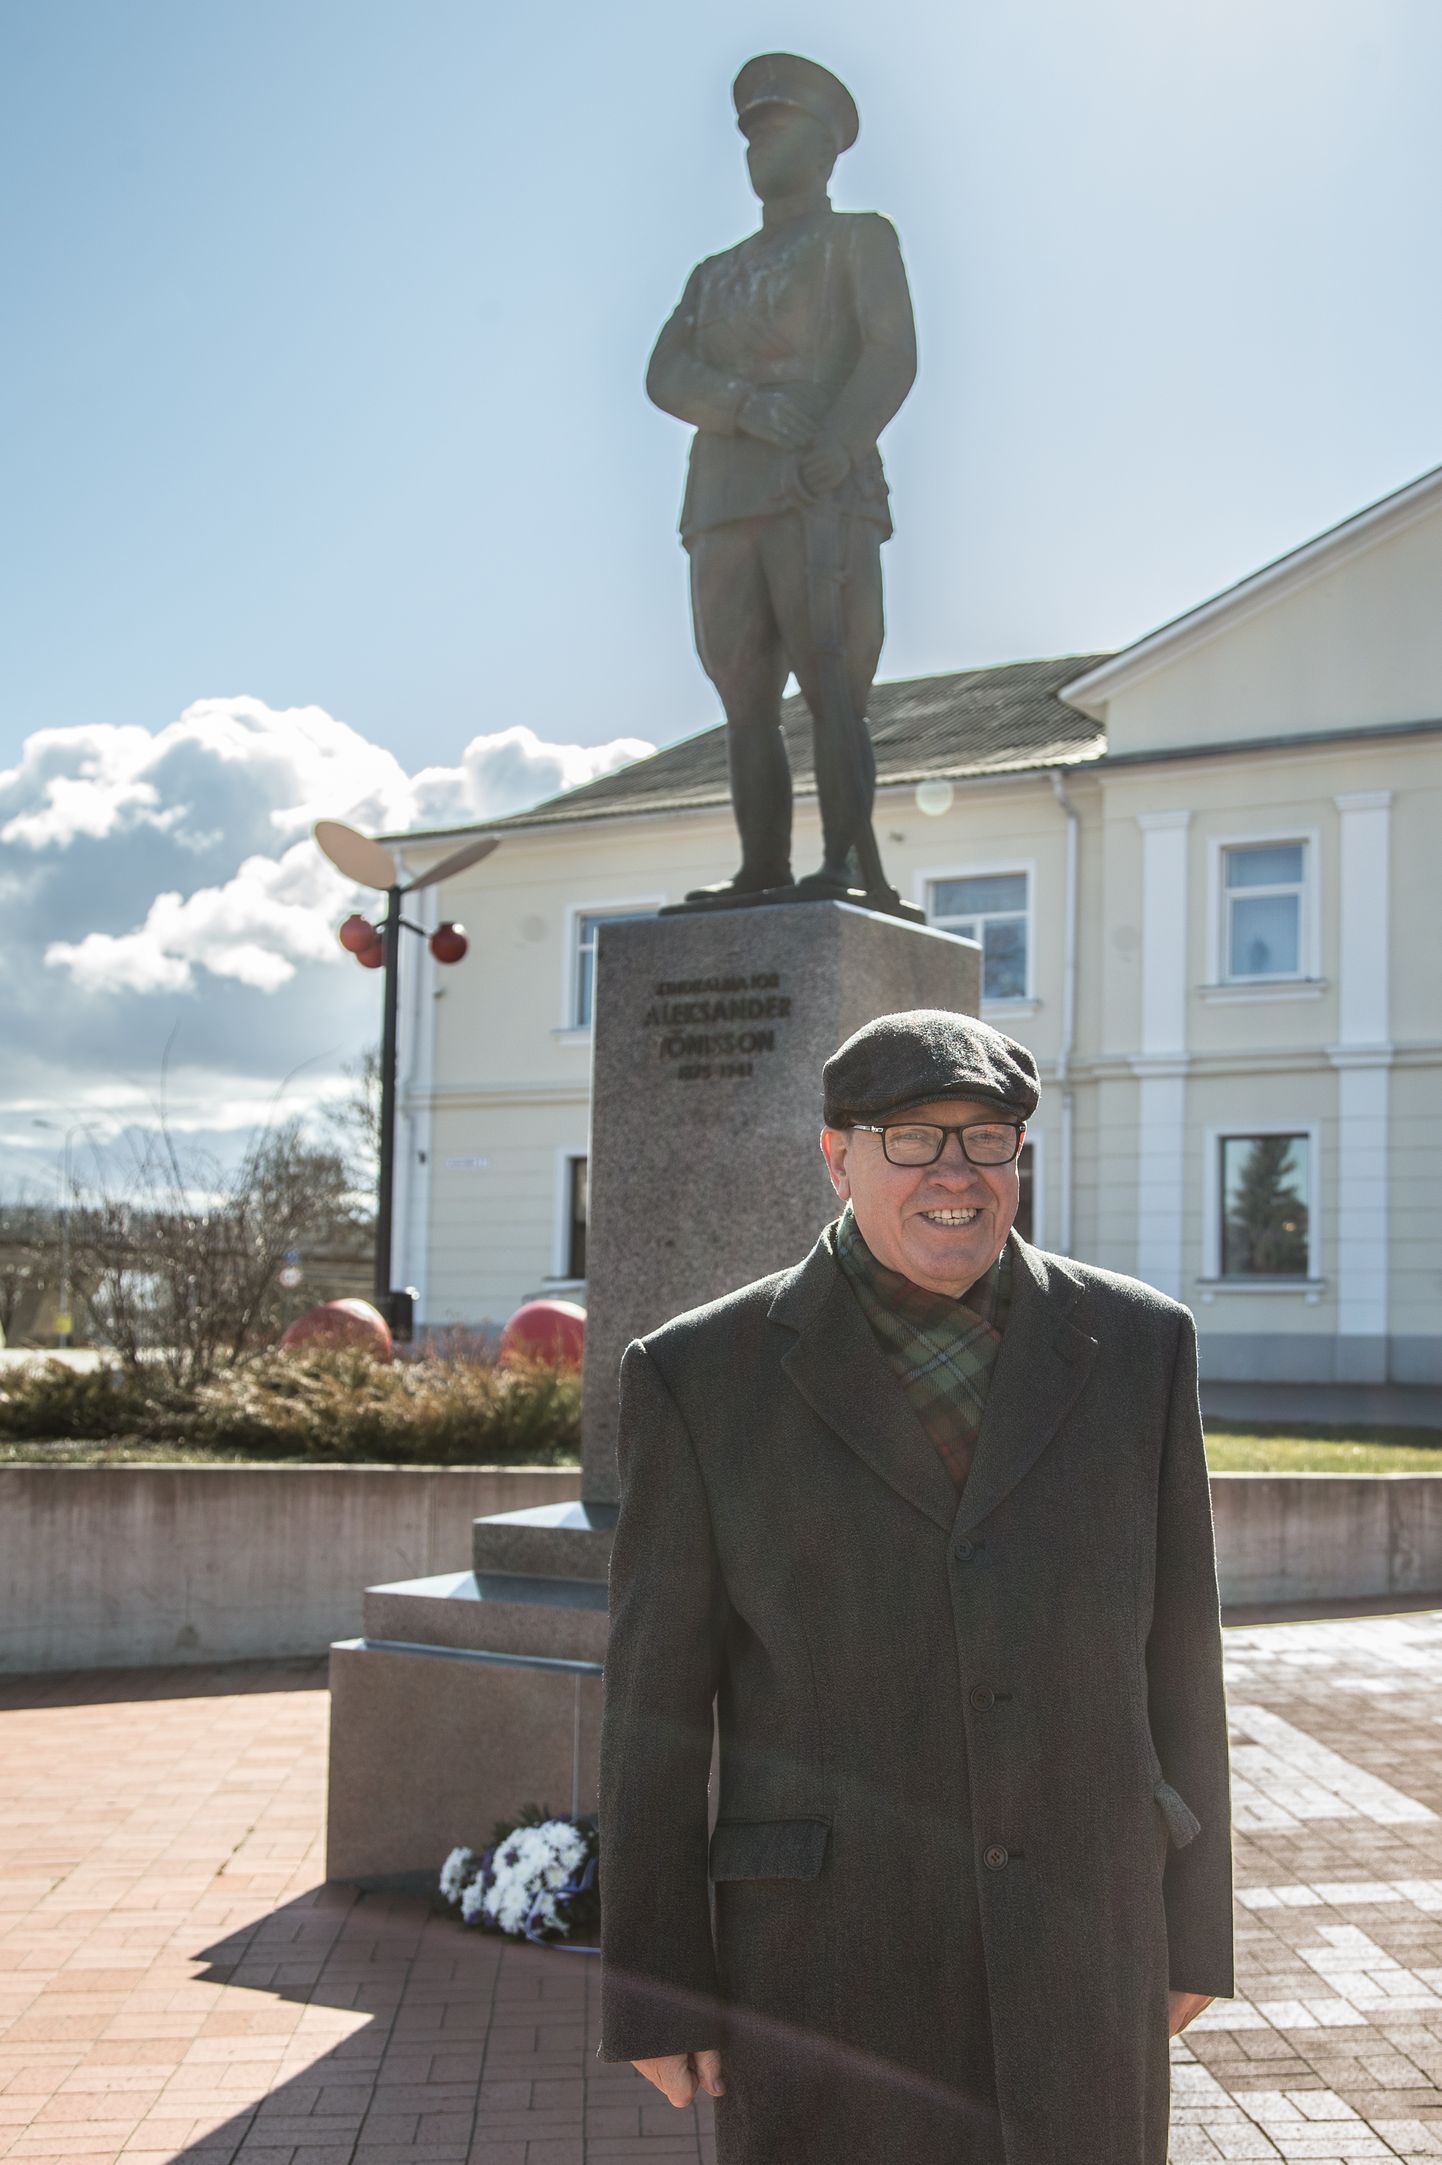 Калев Наур на протяжении многих лет был активным деятелем общественной жизни, благодаря которому в Йыхви был установлен памятник генералу Александеру Тыниссону и организовано множество различных мероприятий.